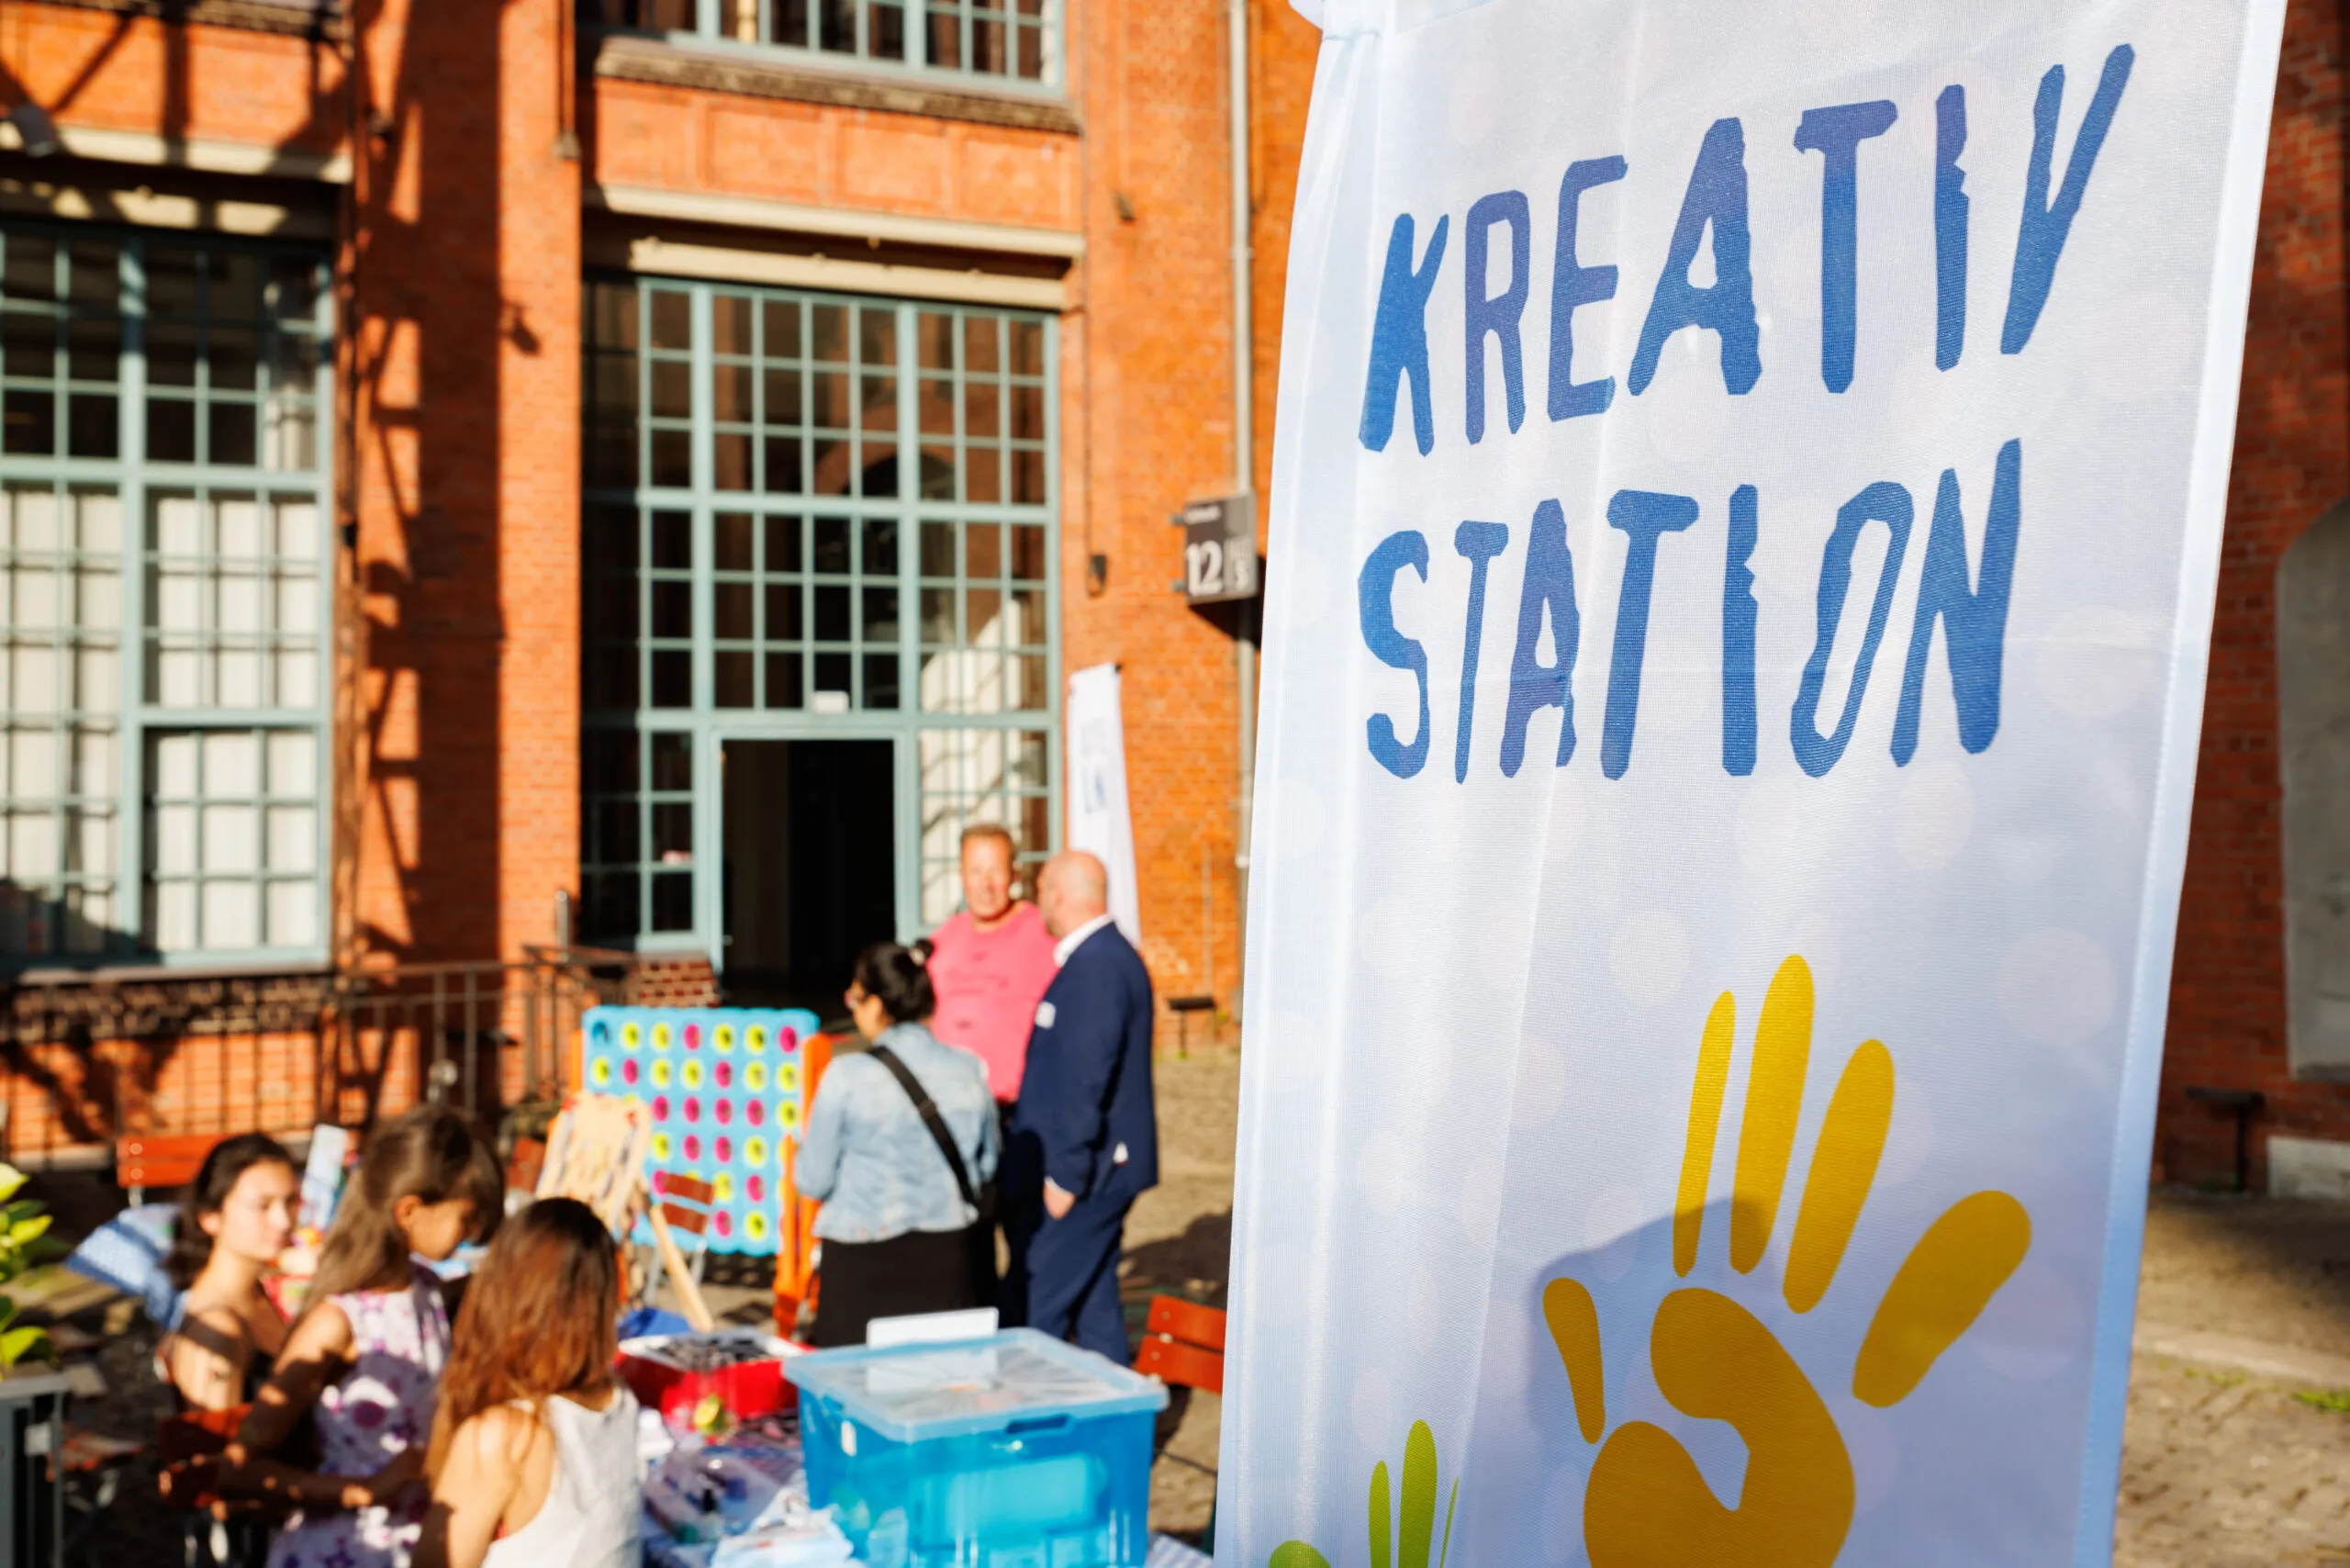 Bild mit einem Plakat mit dem Titel Kreation Station. Im Hintergrund sind stehende und sitzende Menschen zu sehen.